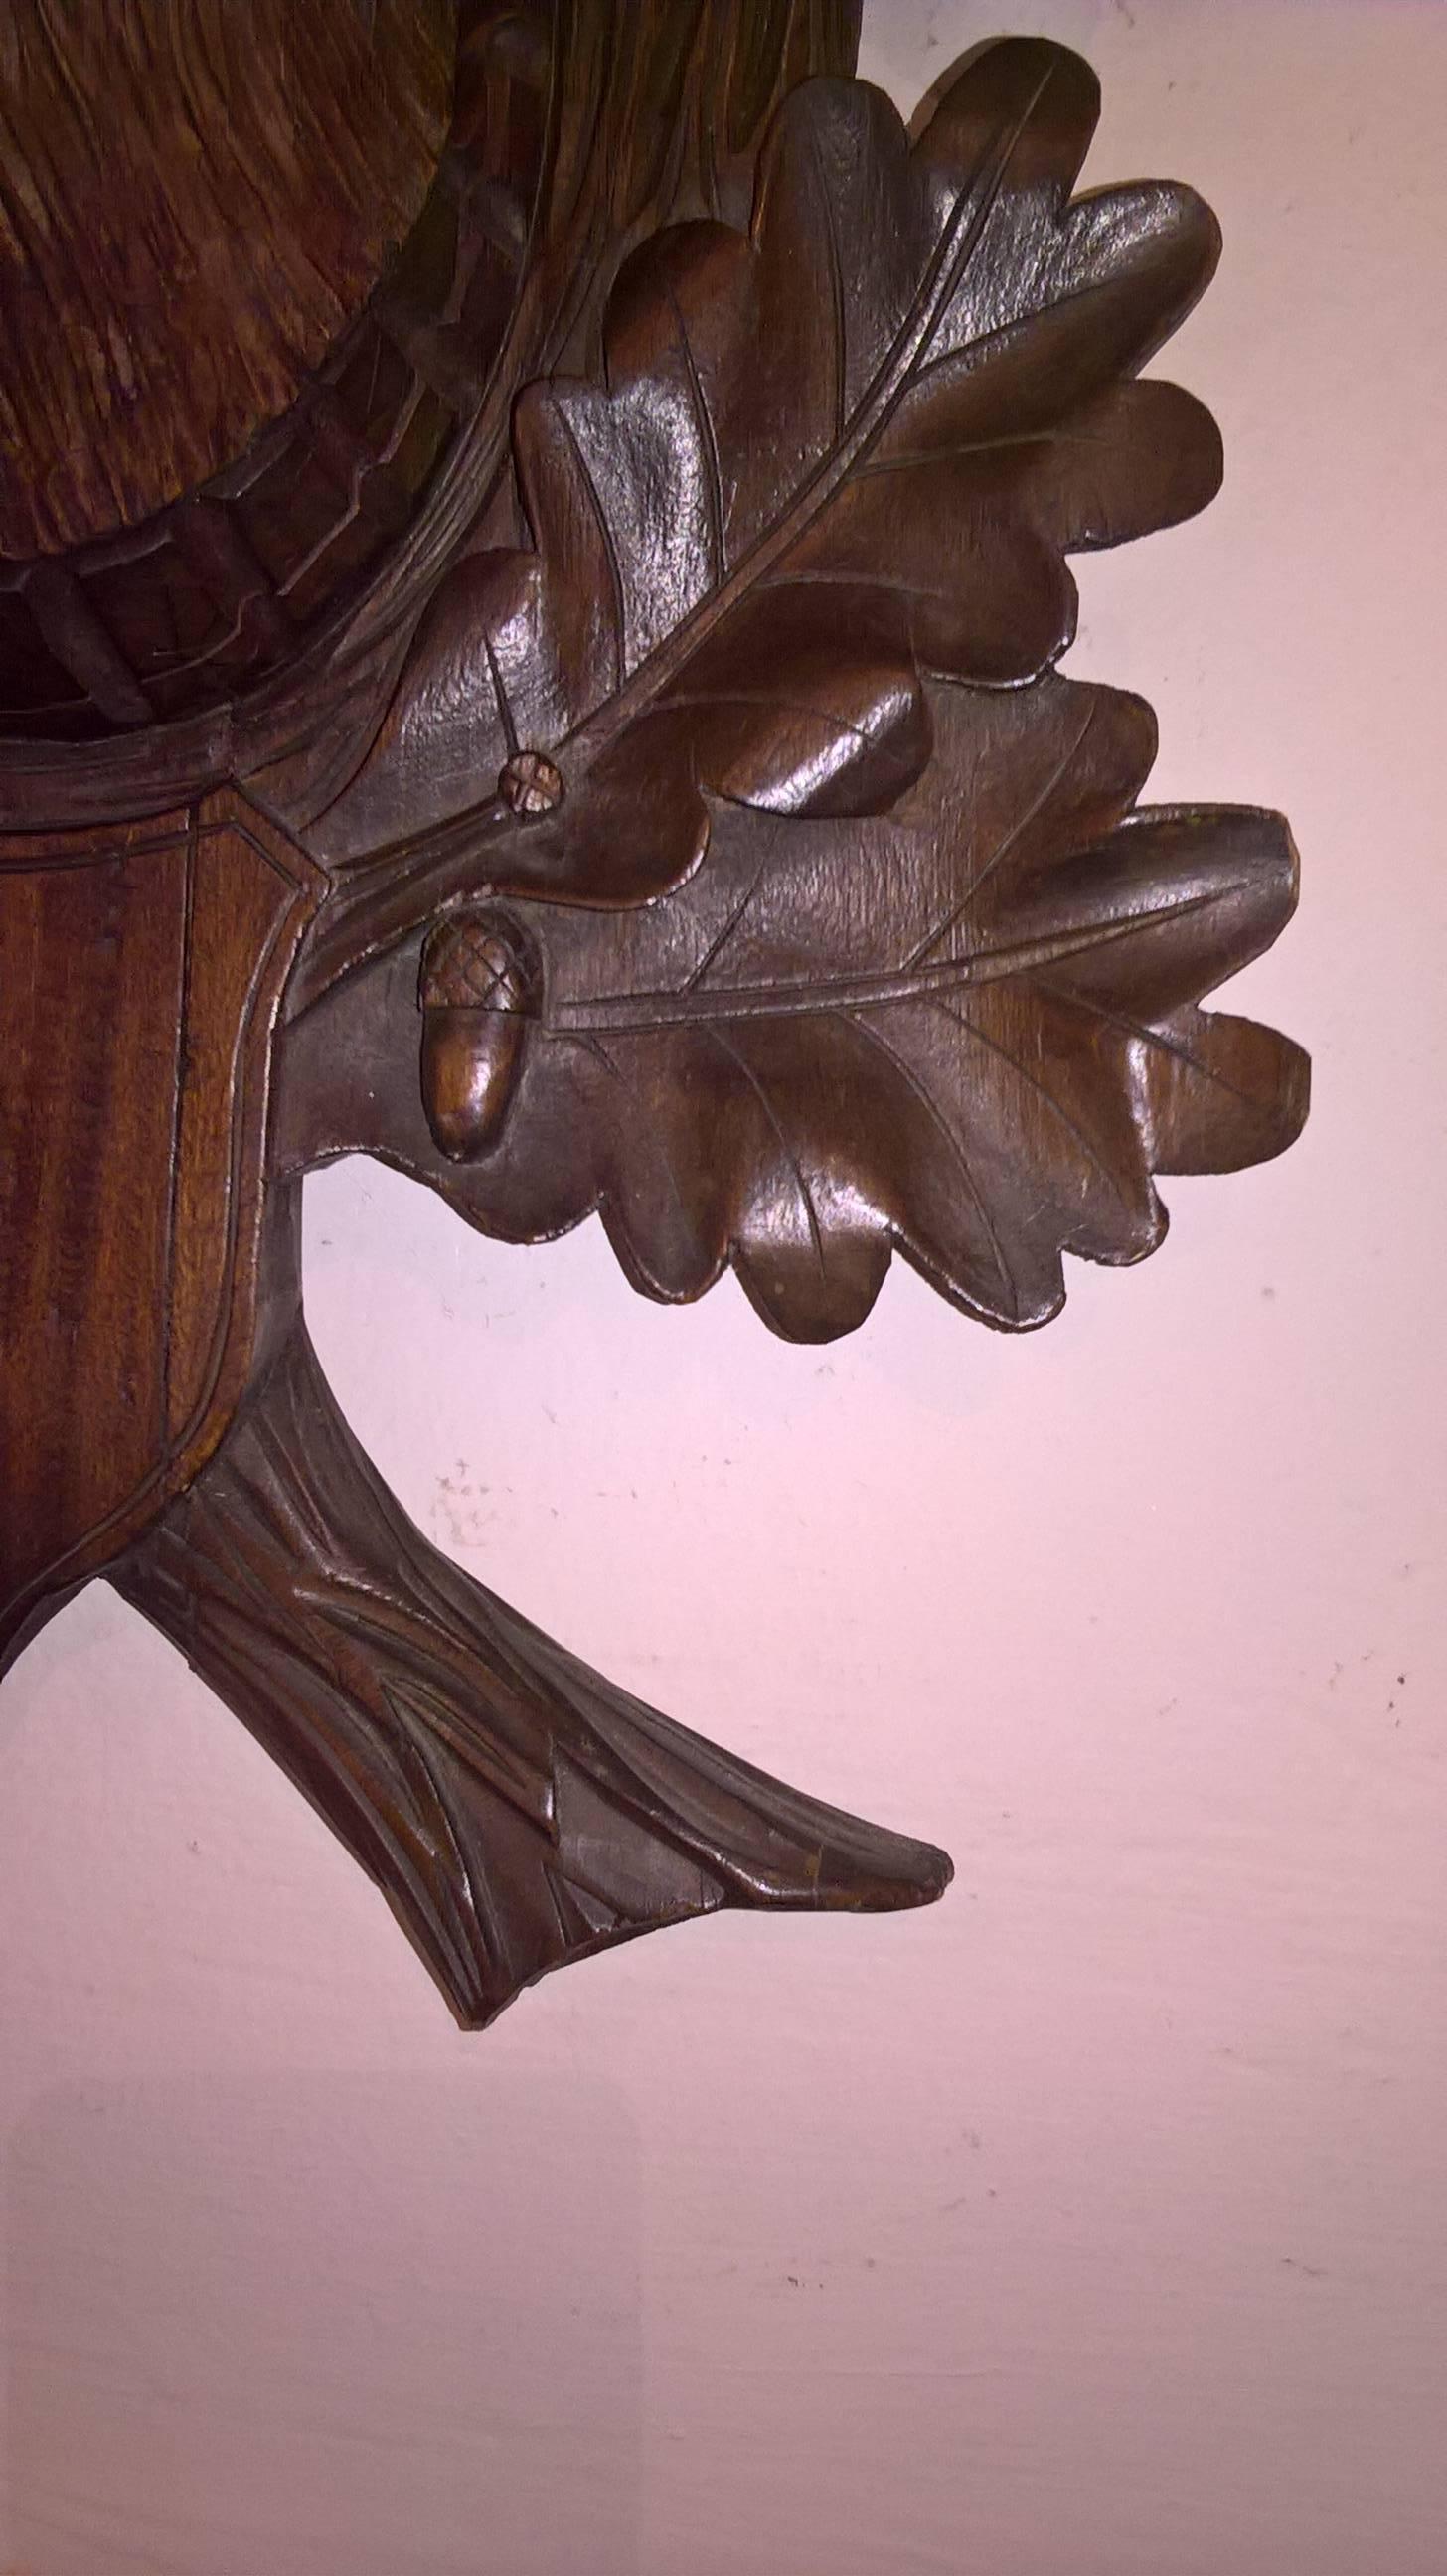 tête de cerf Hughe du 19ème siècle sculptée à la main en bois de chêne avec de vraies cornes de cerf. Les yeux  avec de vrais cils. Monté sur une grande plaque en bois sculpté avec des feuilles et des glands dans le style de la forêt noire. Fabriqué